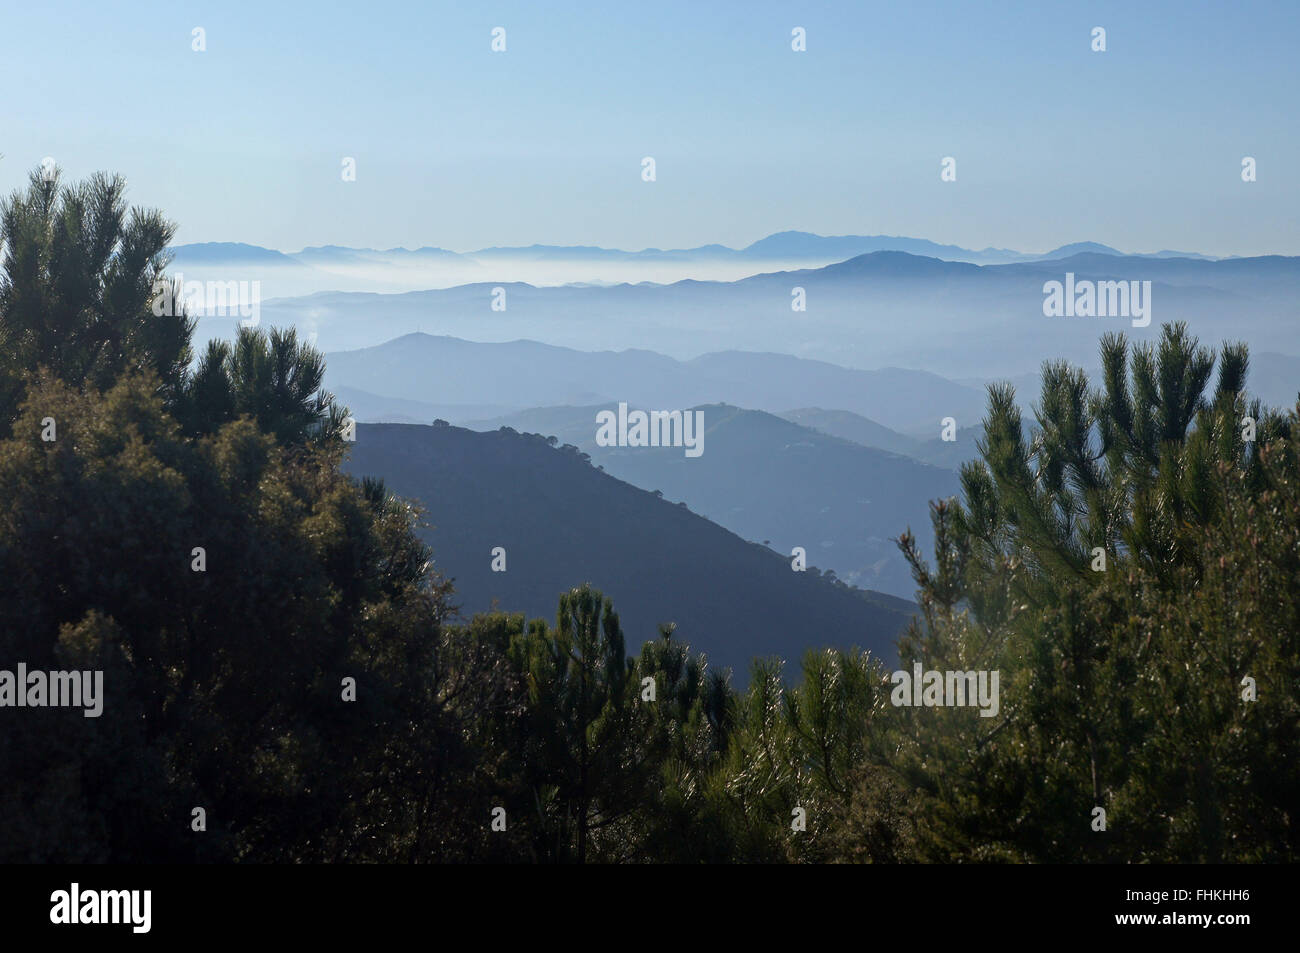 The Sierra Almijara mountains Stock Photo